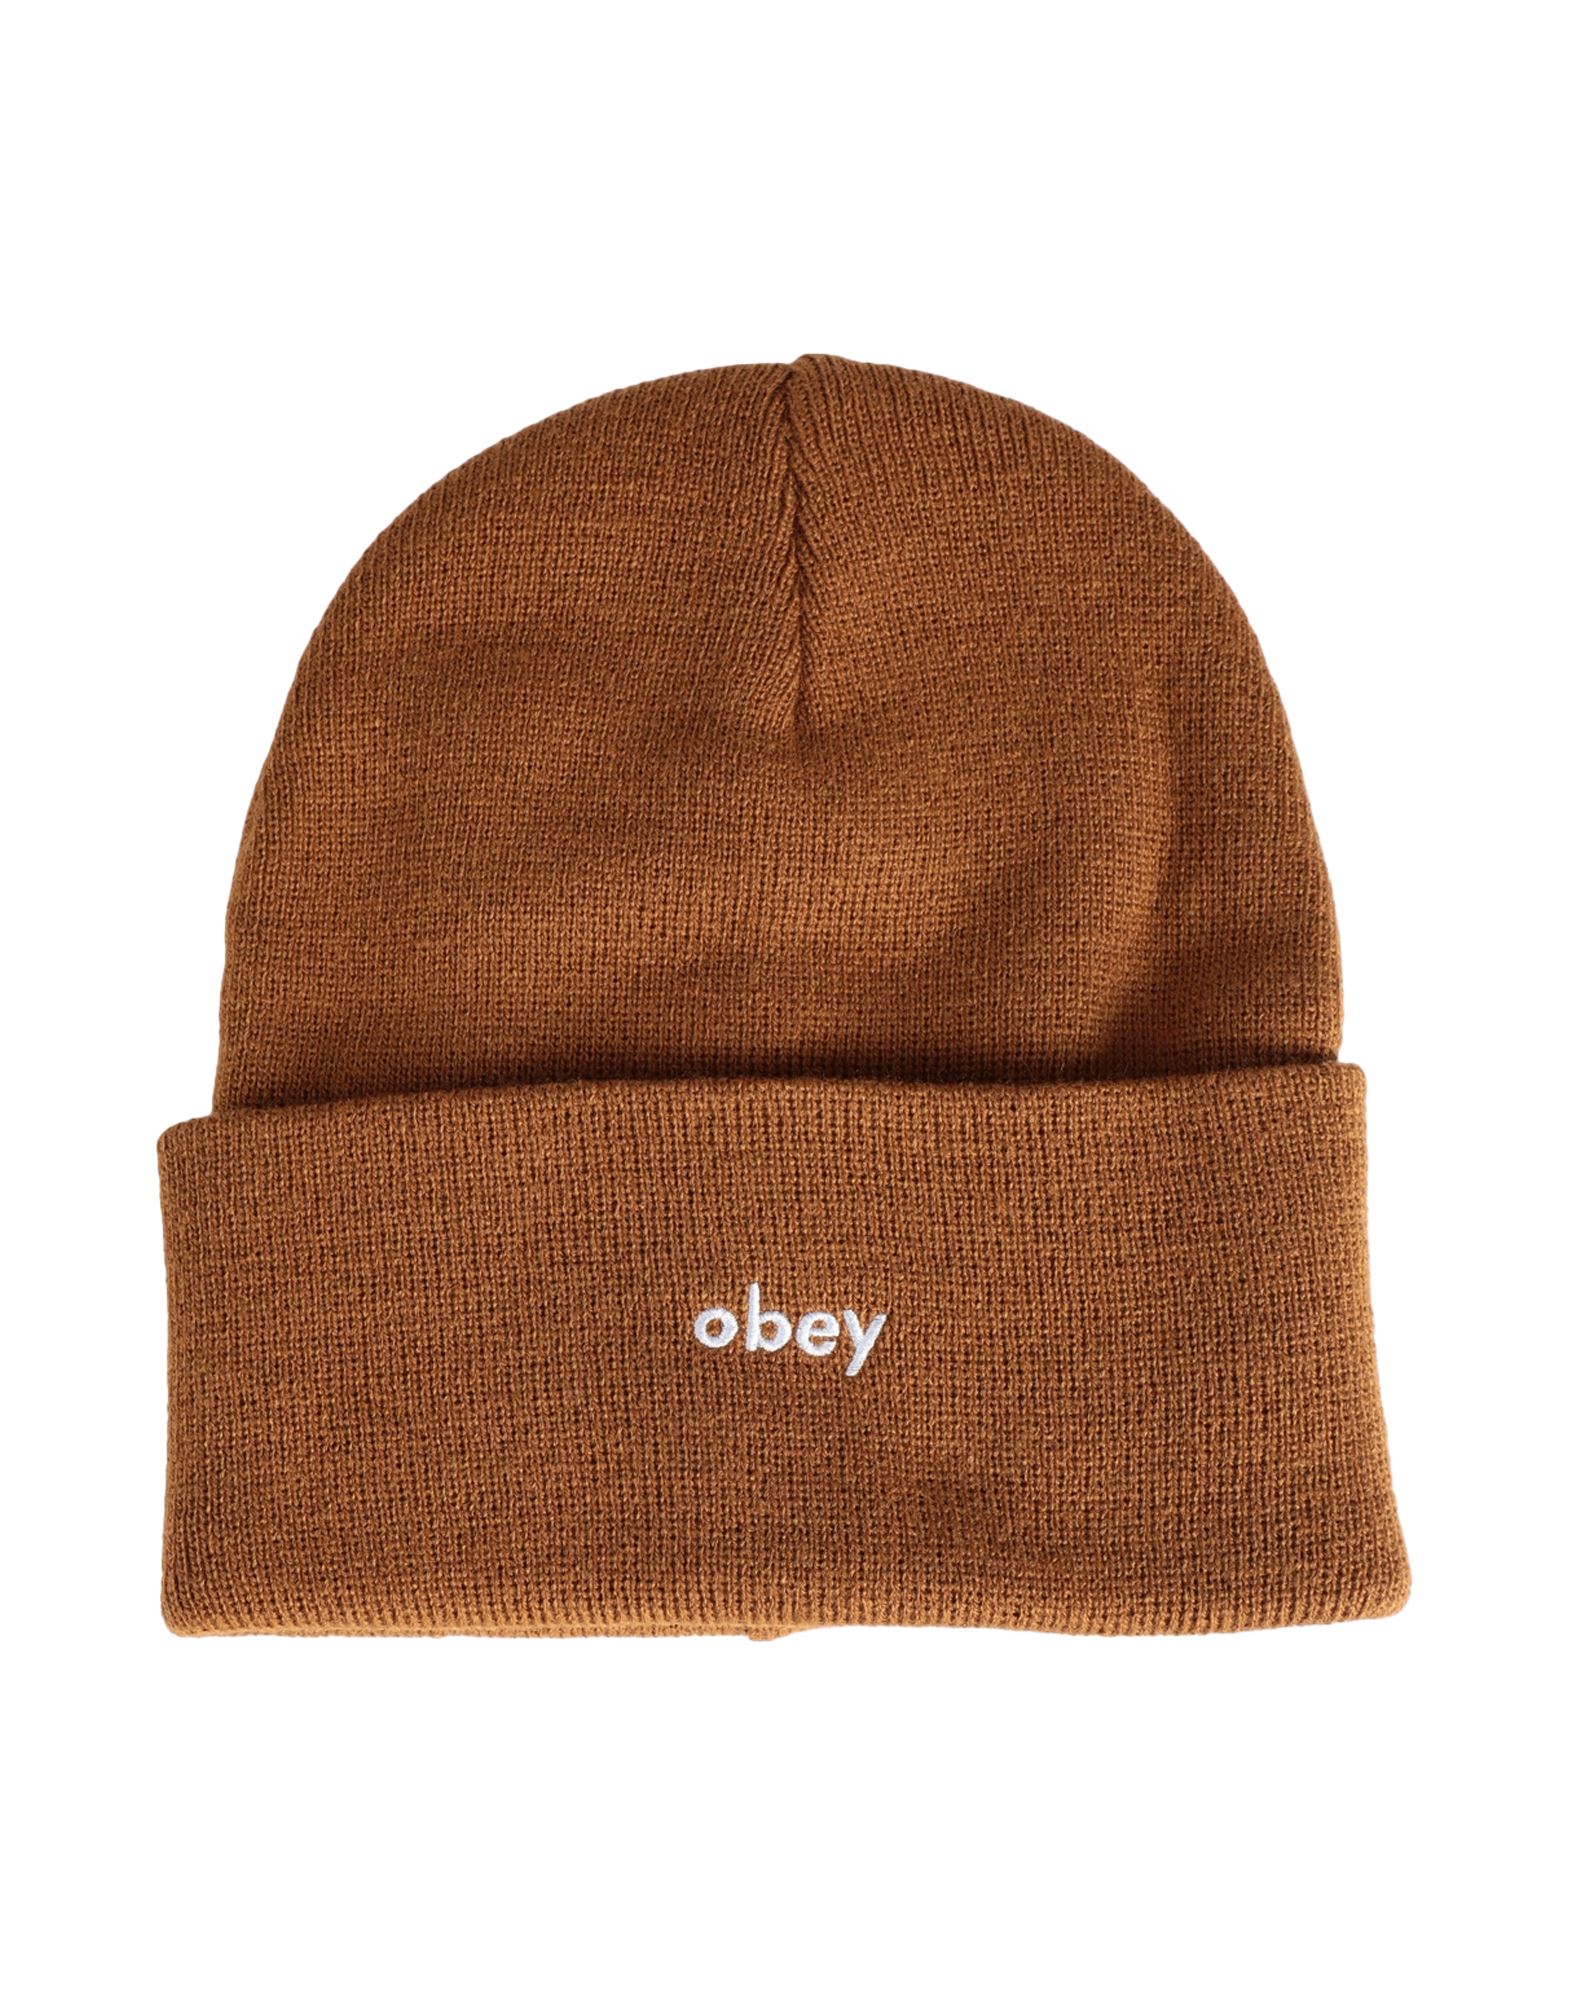 オベイ(OBEY) メンズ帽子・キャップ | 通販・人気ランキング - 価格.com